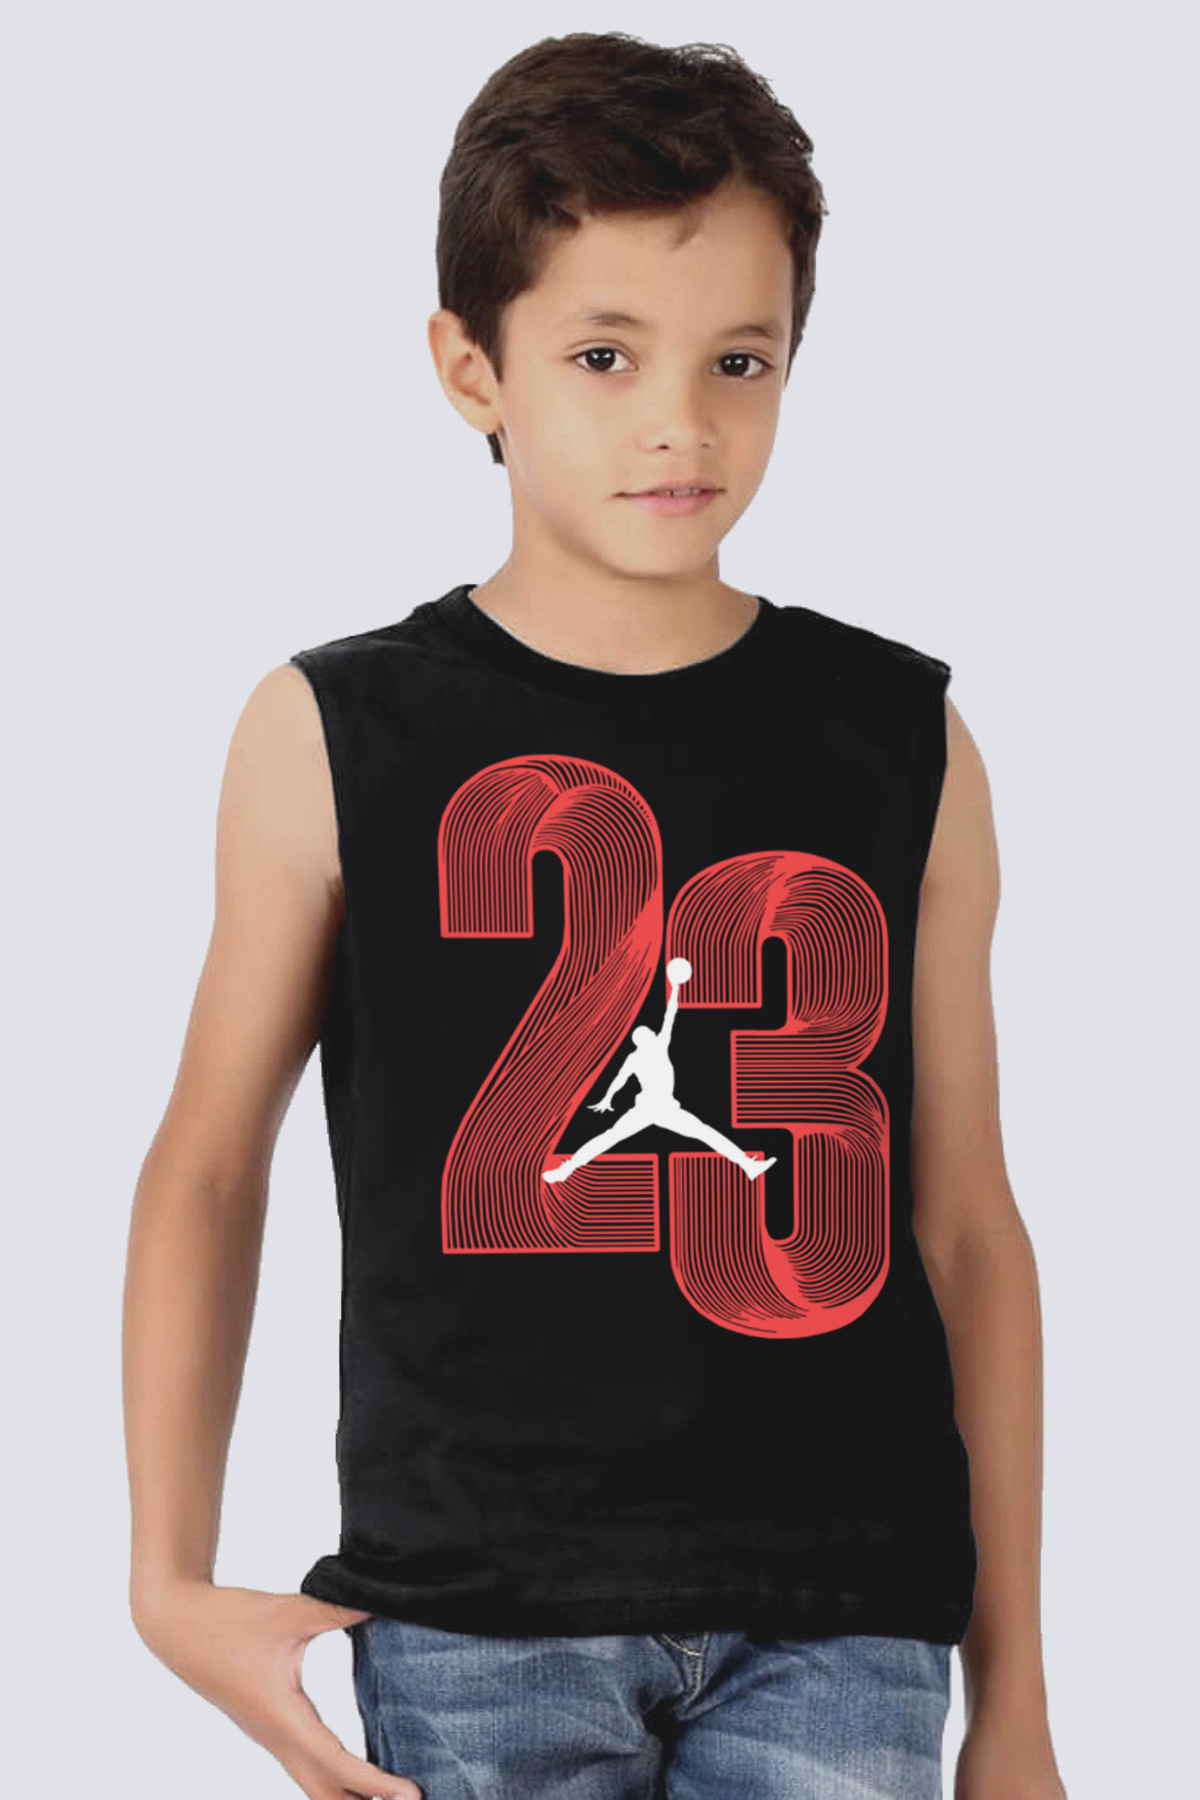 Yirmi Üç Siyah Kesik Kol | Kolsuz Çocuk T-shirt | Atlet